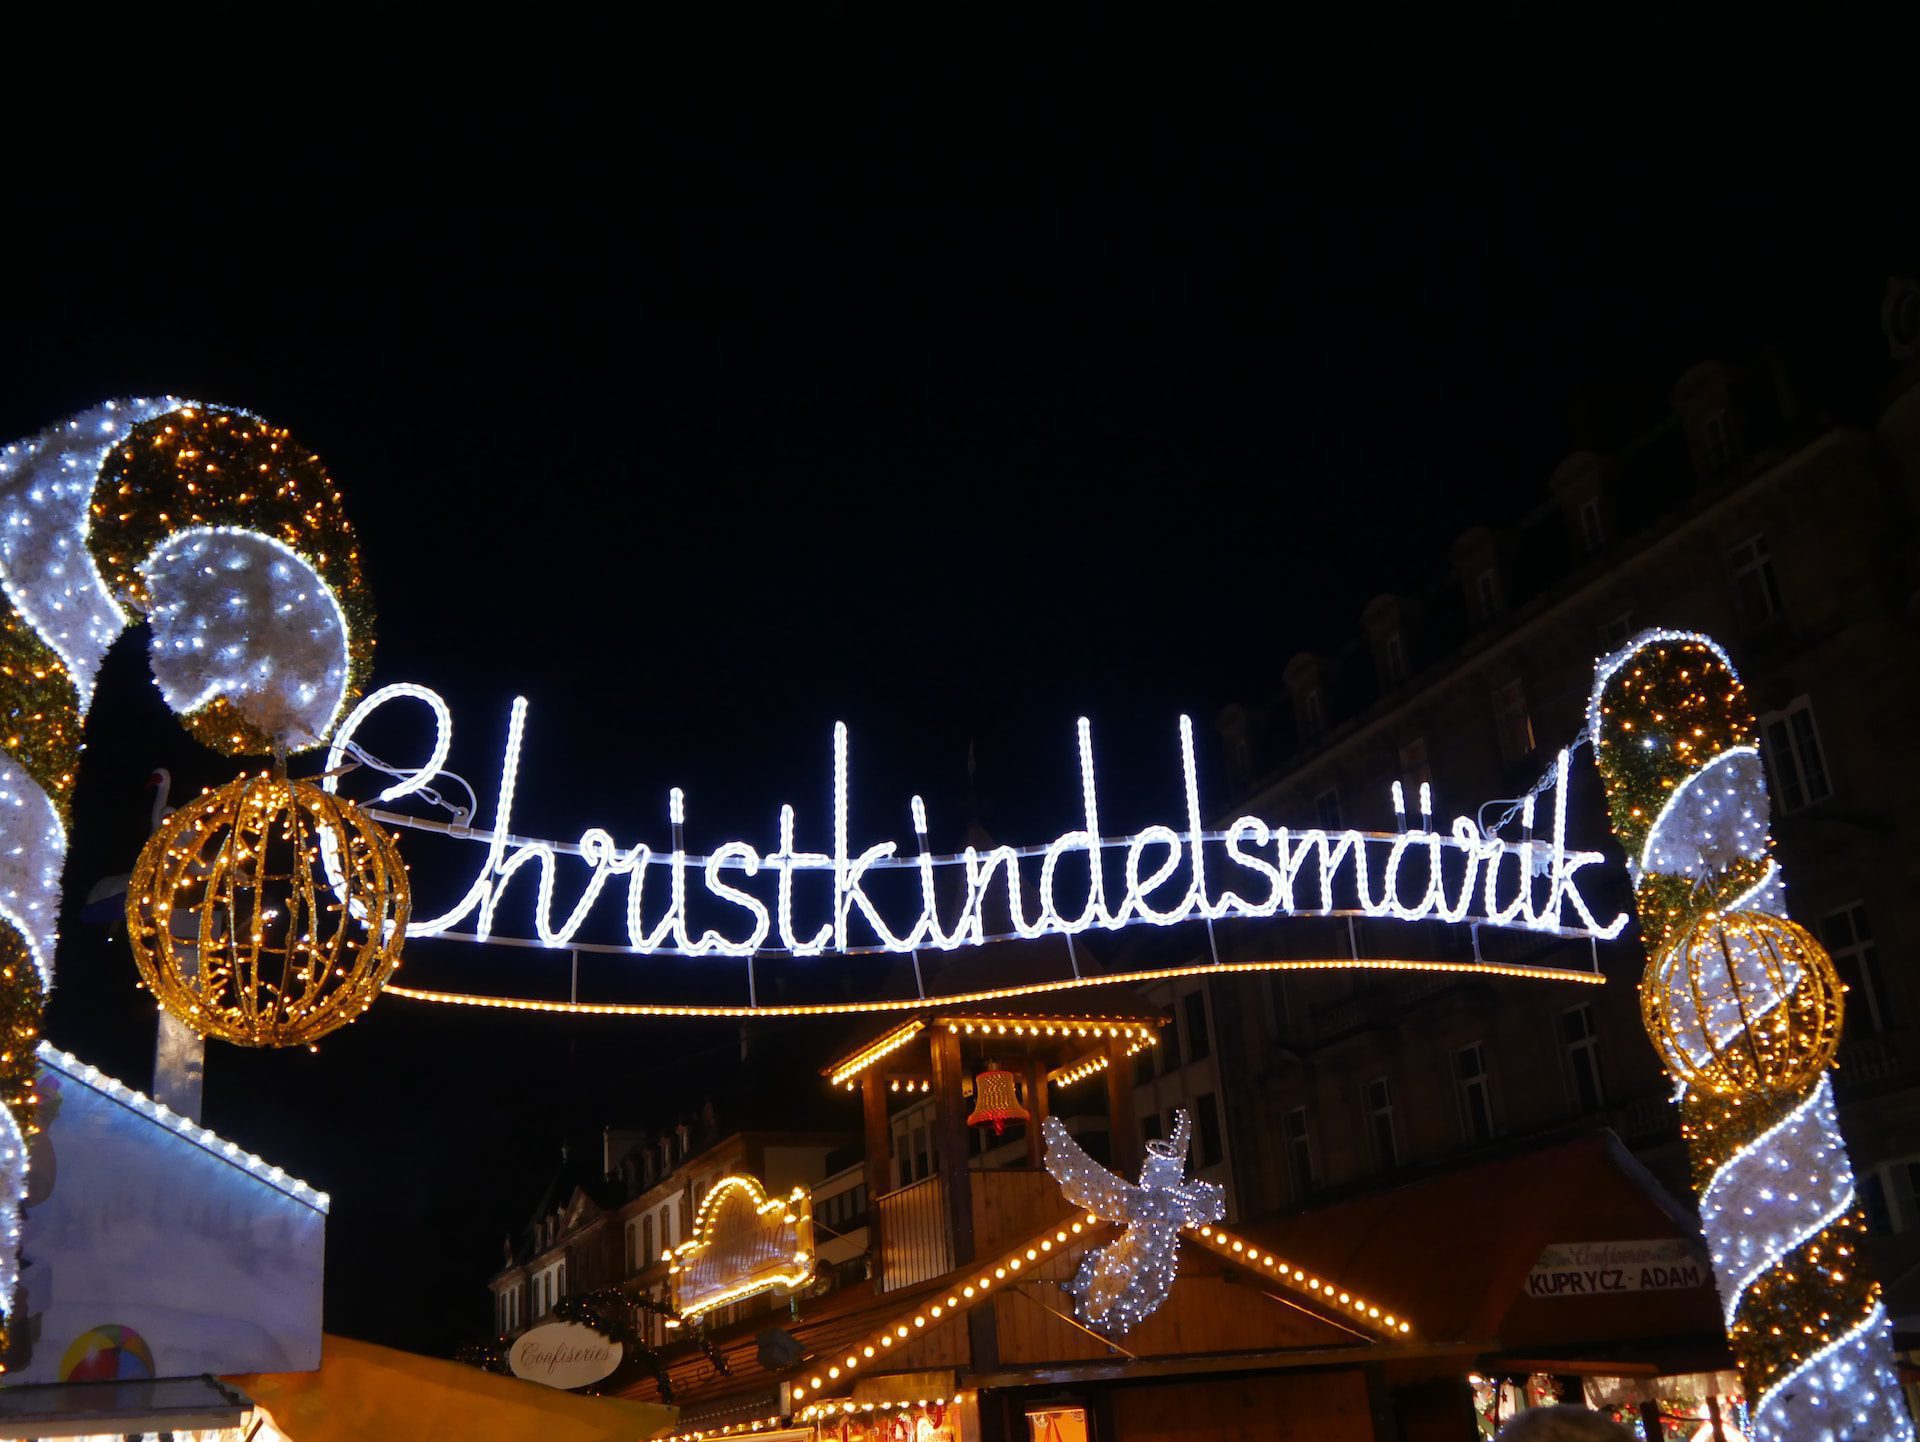 Christkindlesmarkt, Nuremberg, Allemagne